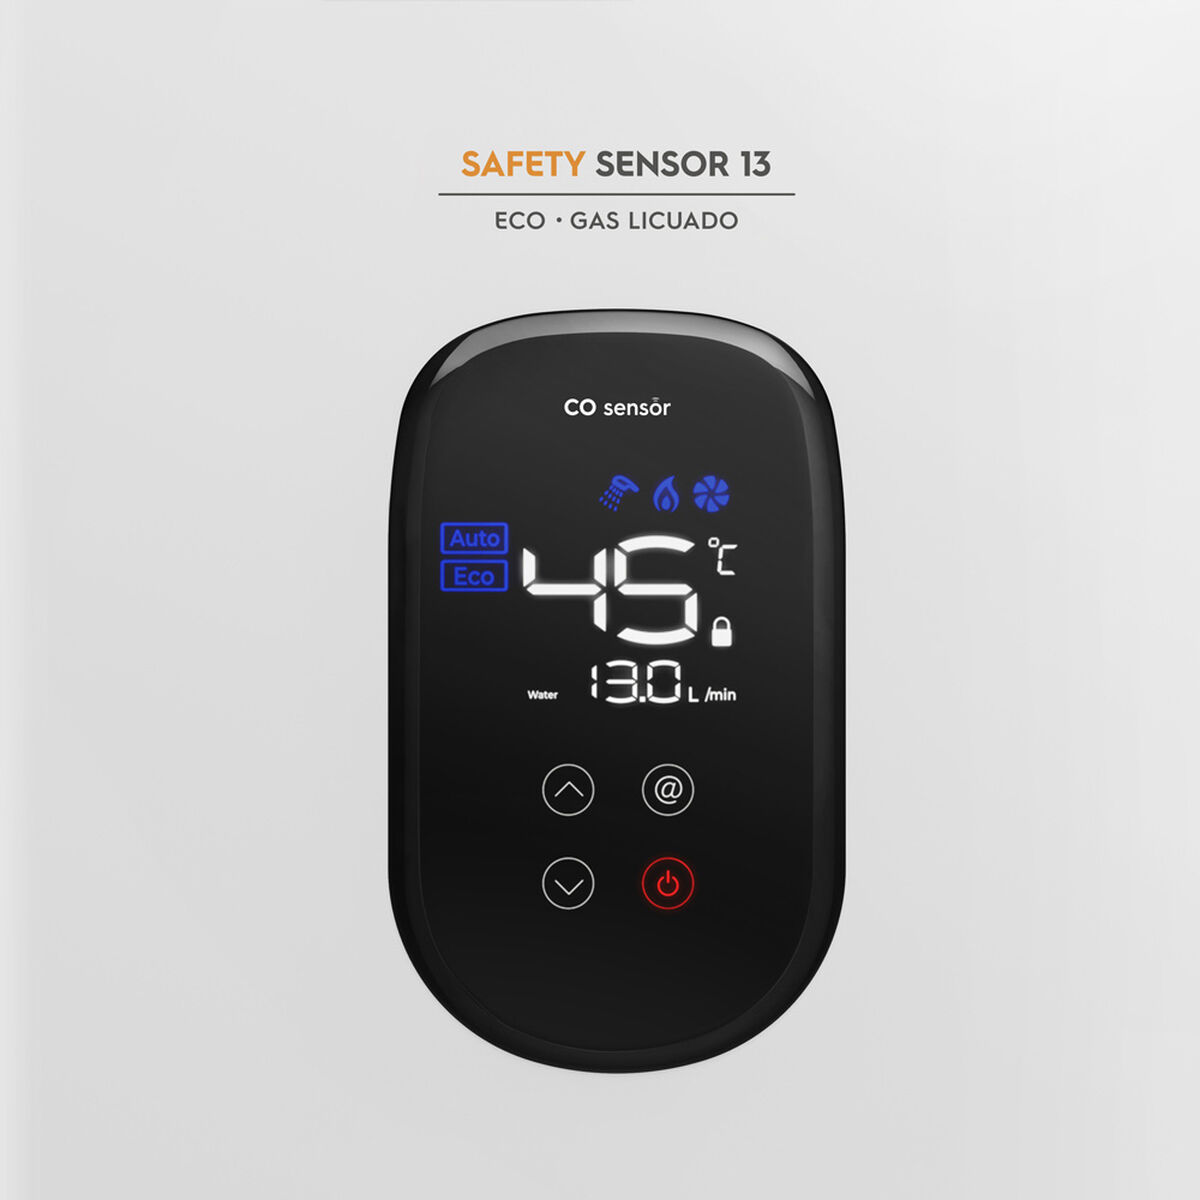 Calefont Mademsa Safety Sensor 13 Eco GL 13 Litros Gas Licuado